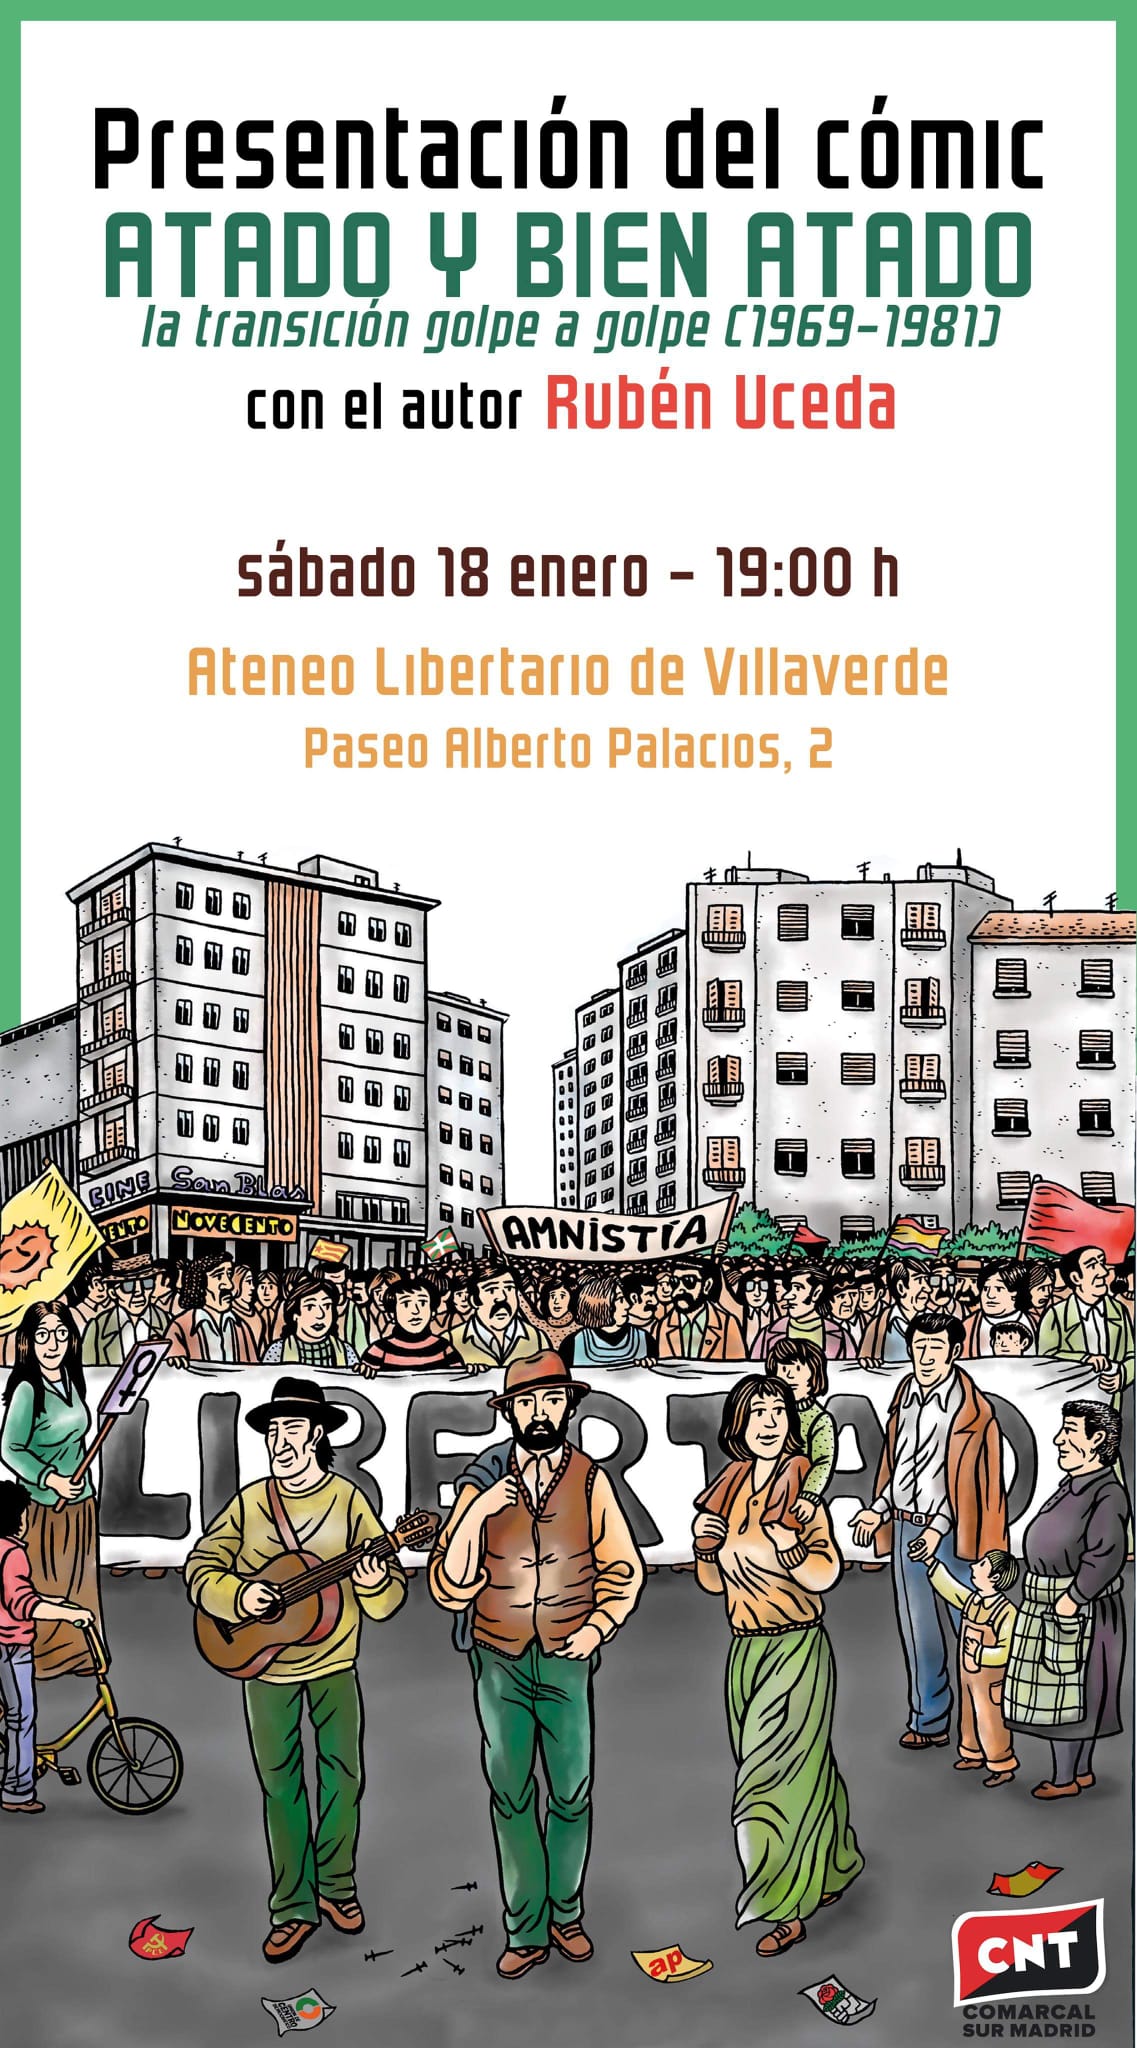 Presentación del cómic “Atado y bien atado” de Rubén Uceda en CNT Comarcal Sur